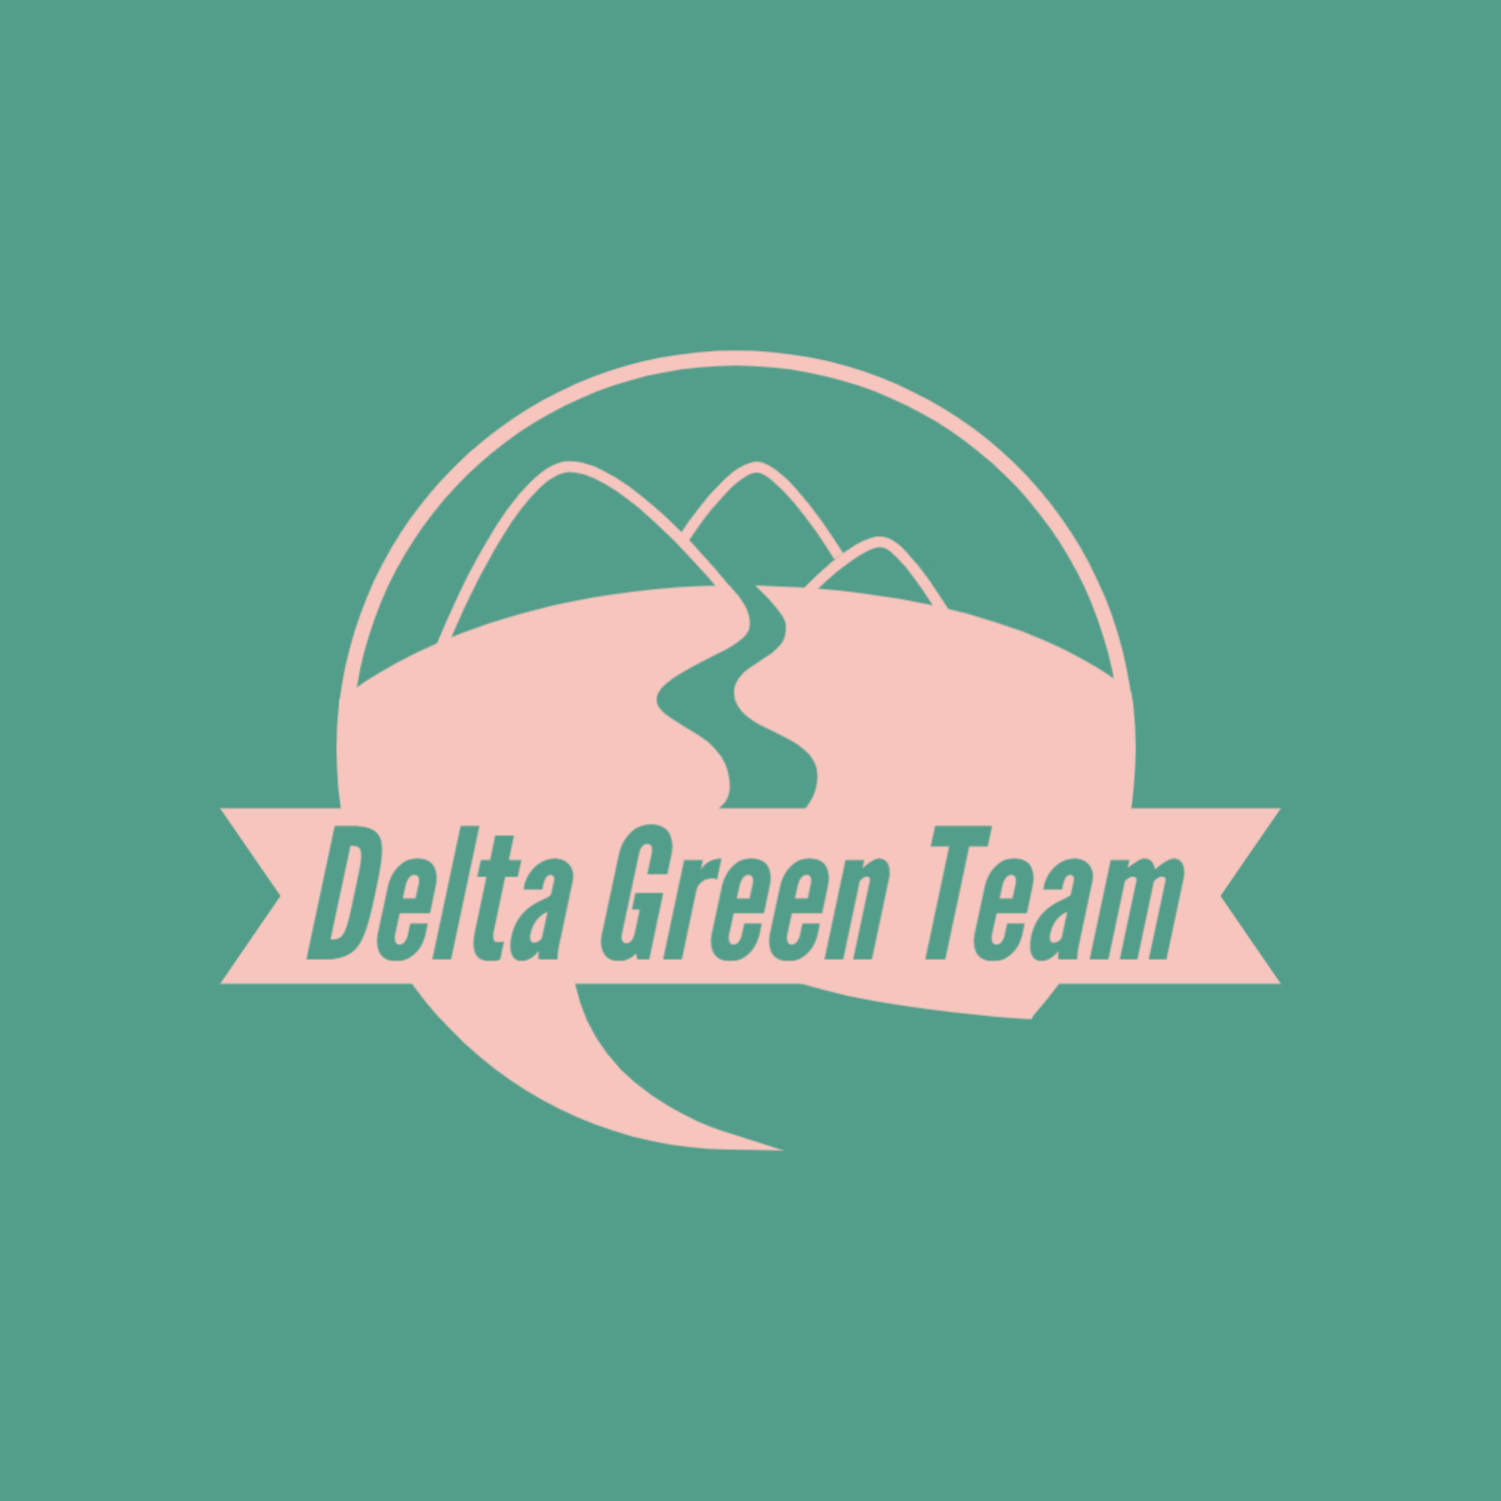 Delta Green Team